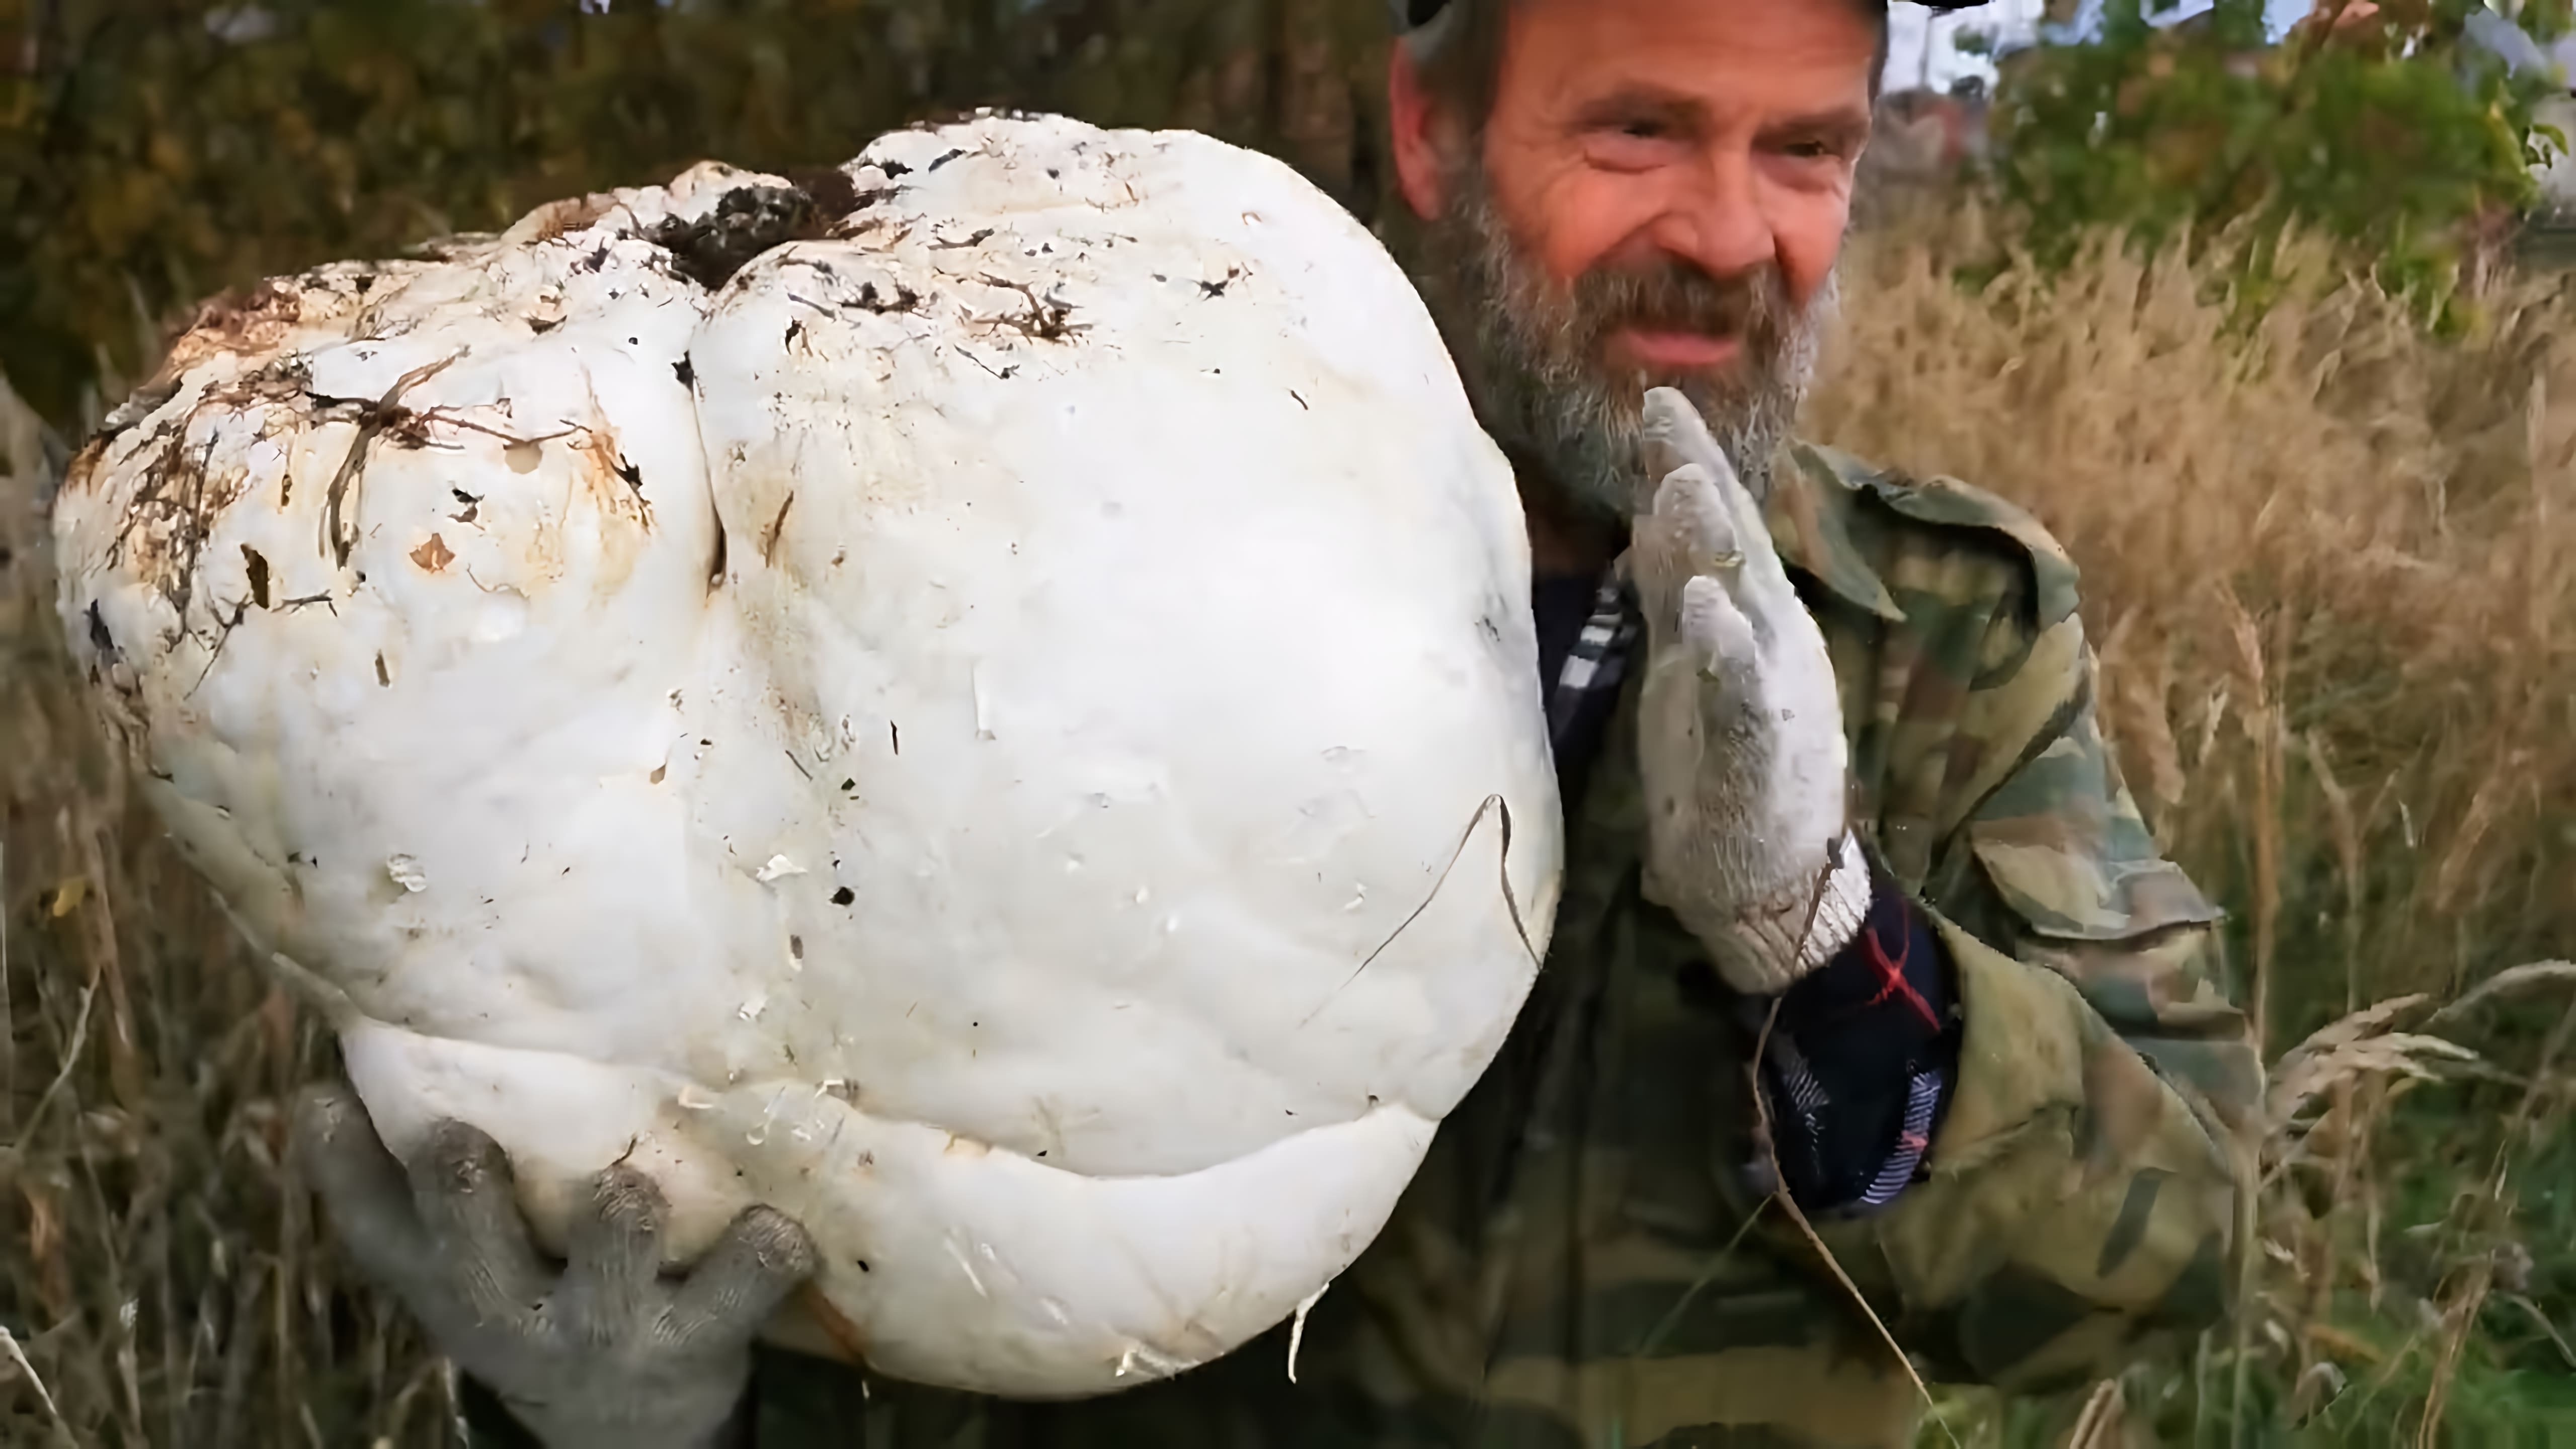 Видео показывает гигантский гриб по имени Calvatia gigantea, также известный как гигантский пуффбол, растущий в лесу